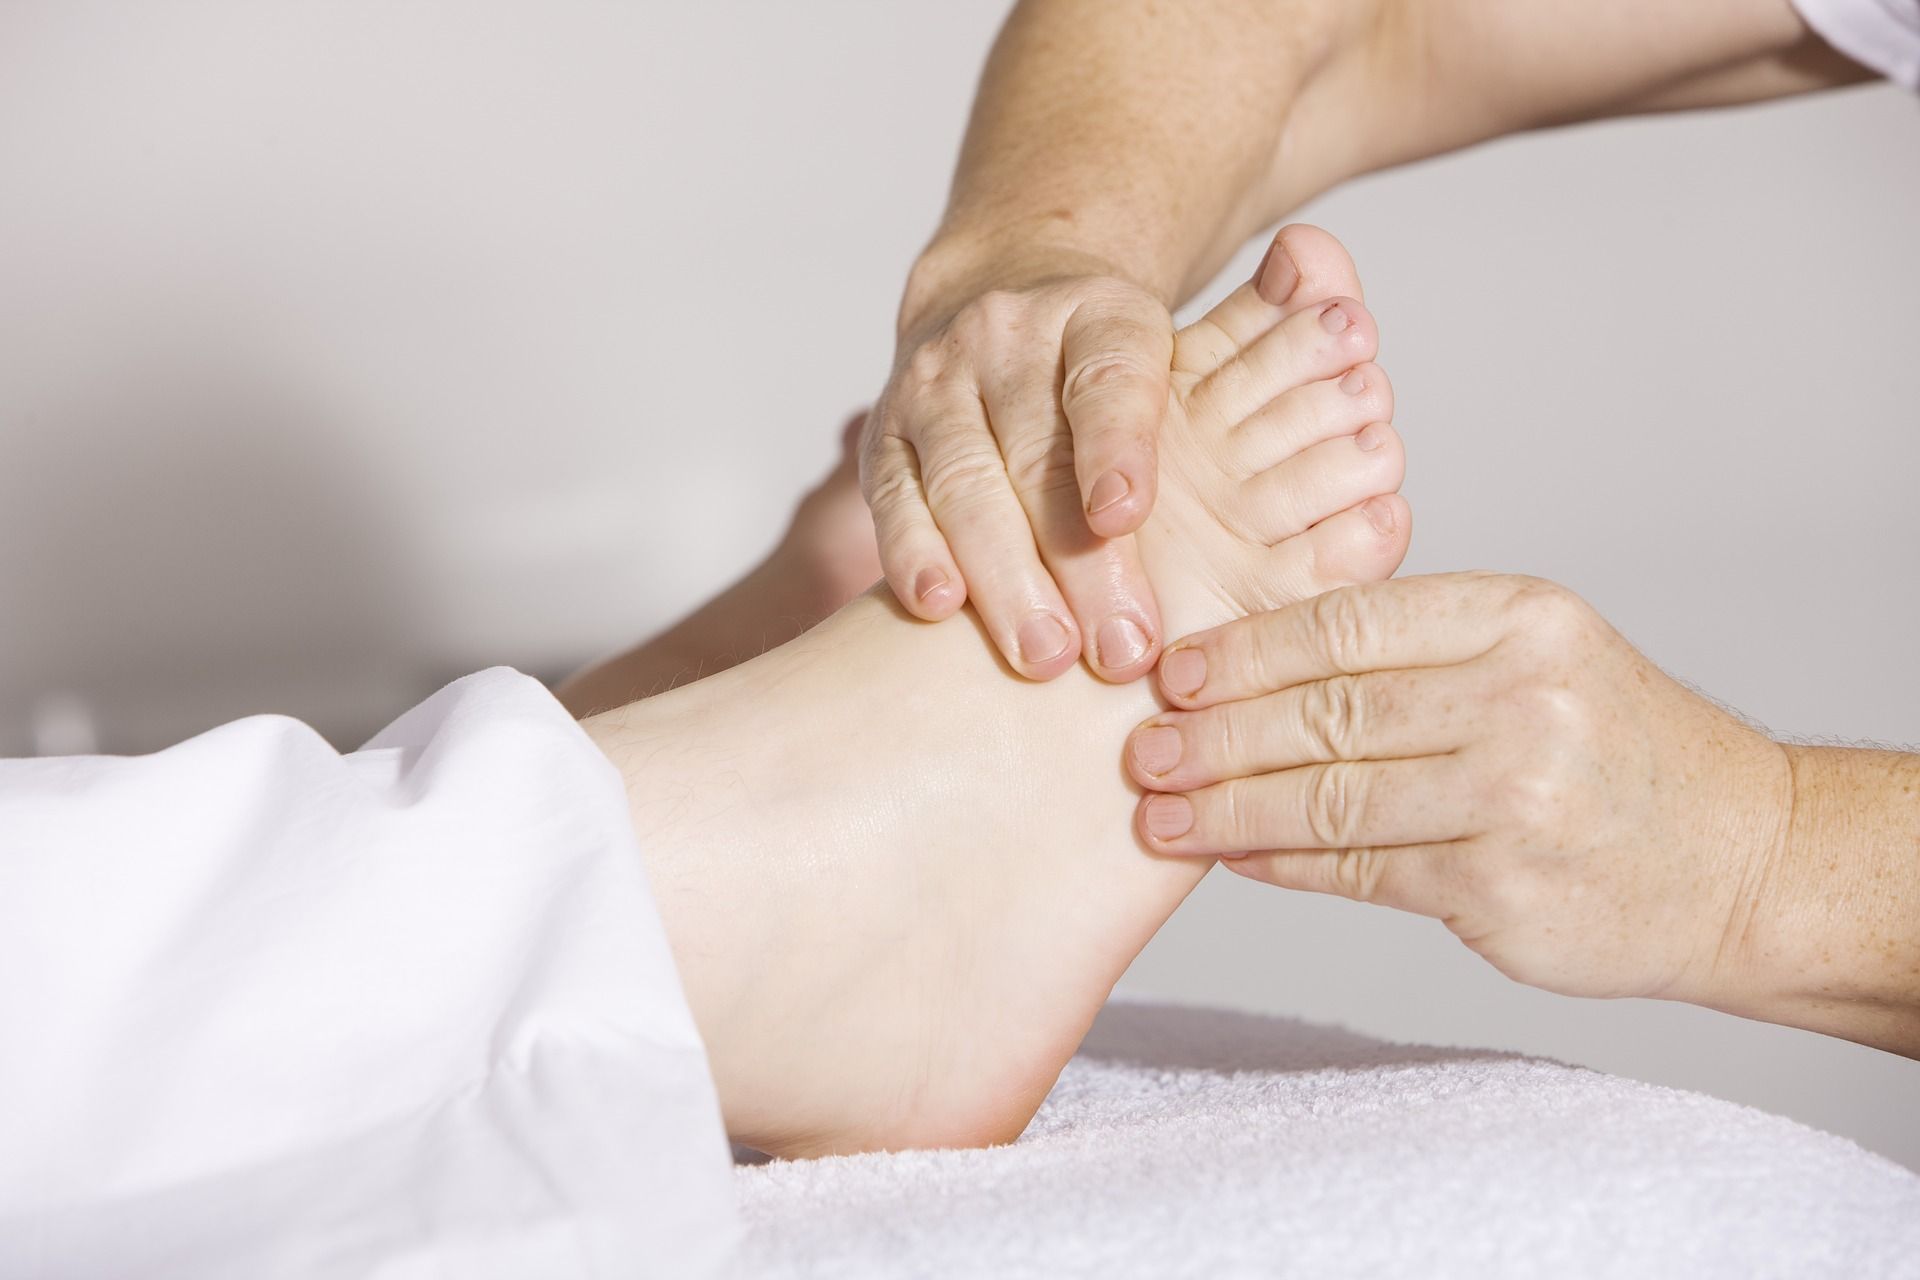 Ejercicios y masajes de fisioterapia ayudan a lograr un mejor apoyo que reduzca el riesgo de caídas (Creative commons)